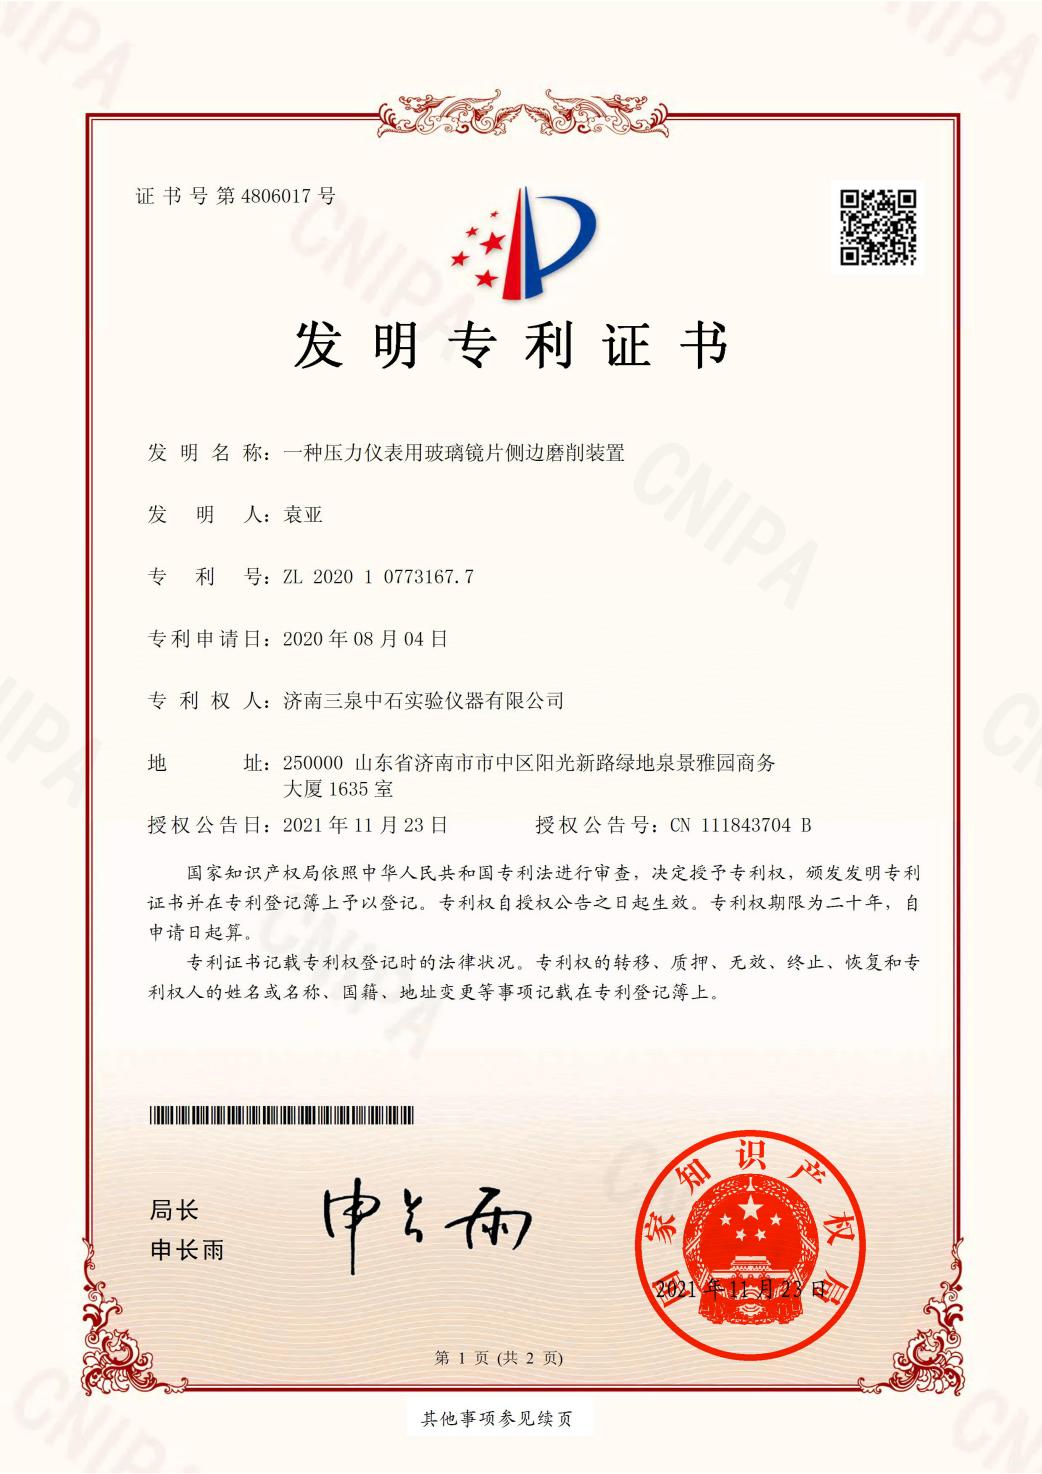 祝贺三泉中石获得一项发明专利证书.jpg